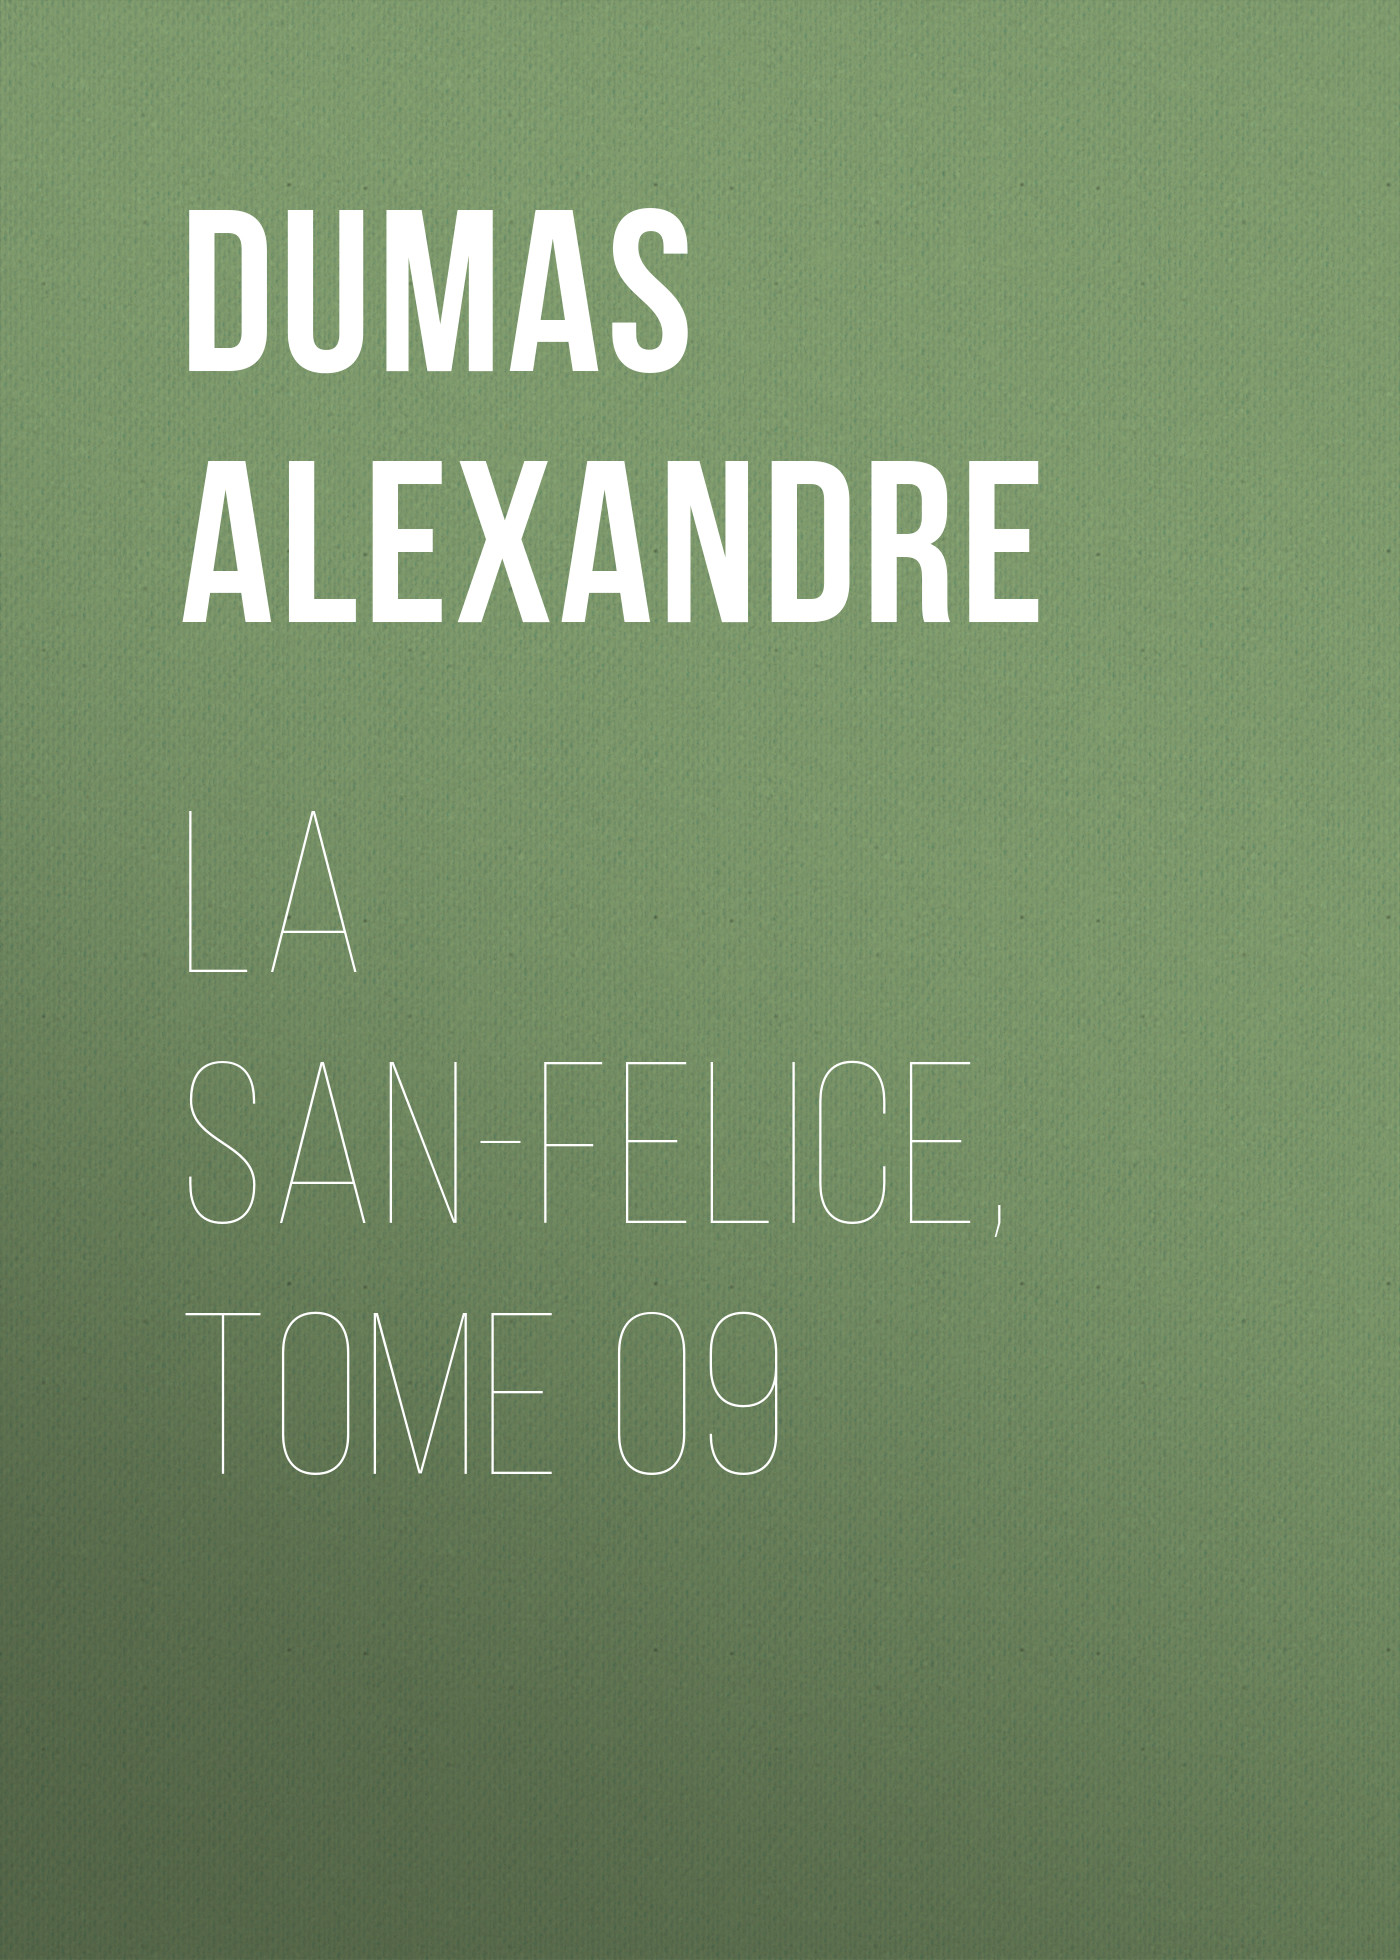 Книга La San-Felice, Tome 09 из серии , созданная Alexandre Dumas, может относится к жанру Литература 19 века, Зарубежная старинная литература, Зарубежная классика. Стоимость электронной книги La San-Felice, Tome 09 с идентификатором 25203487 составляет 0 руб.